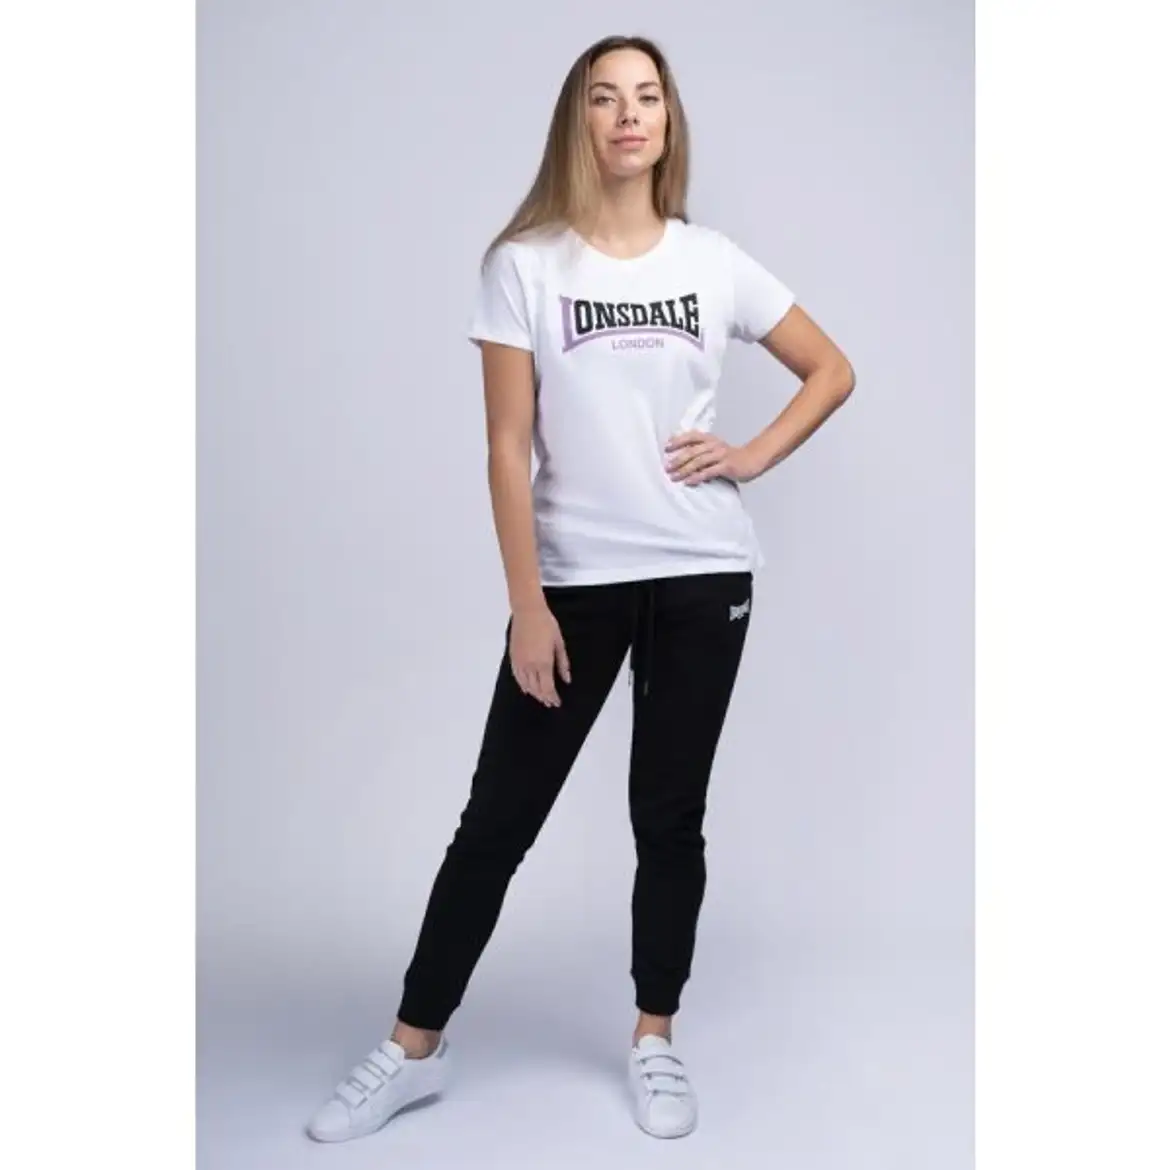 Lonsdale Tallow Women's T-shirt - Black/Marl Grey/White